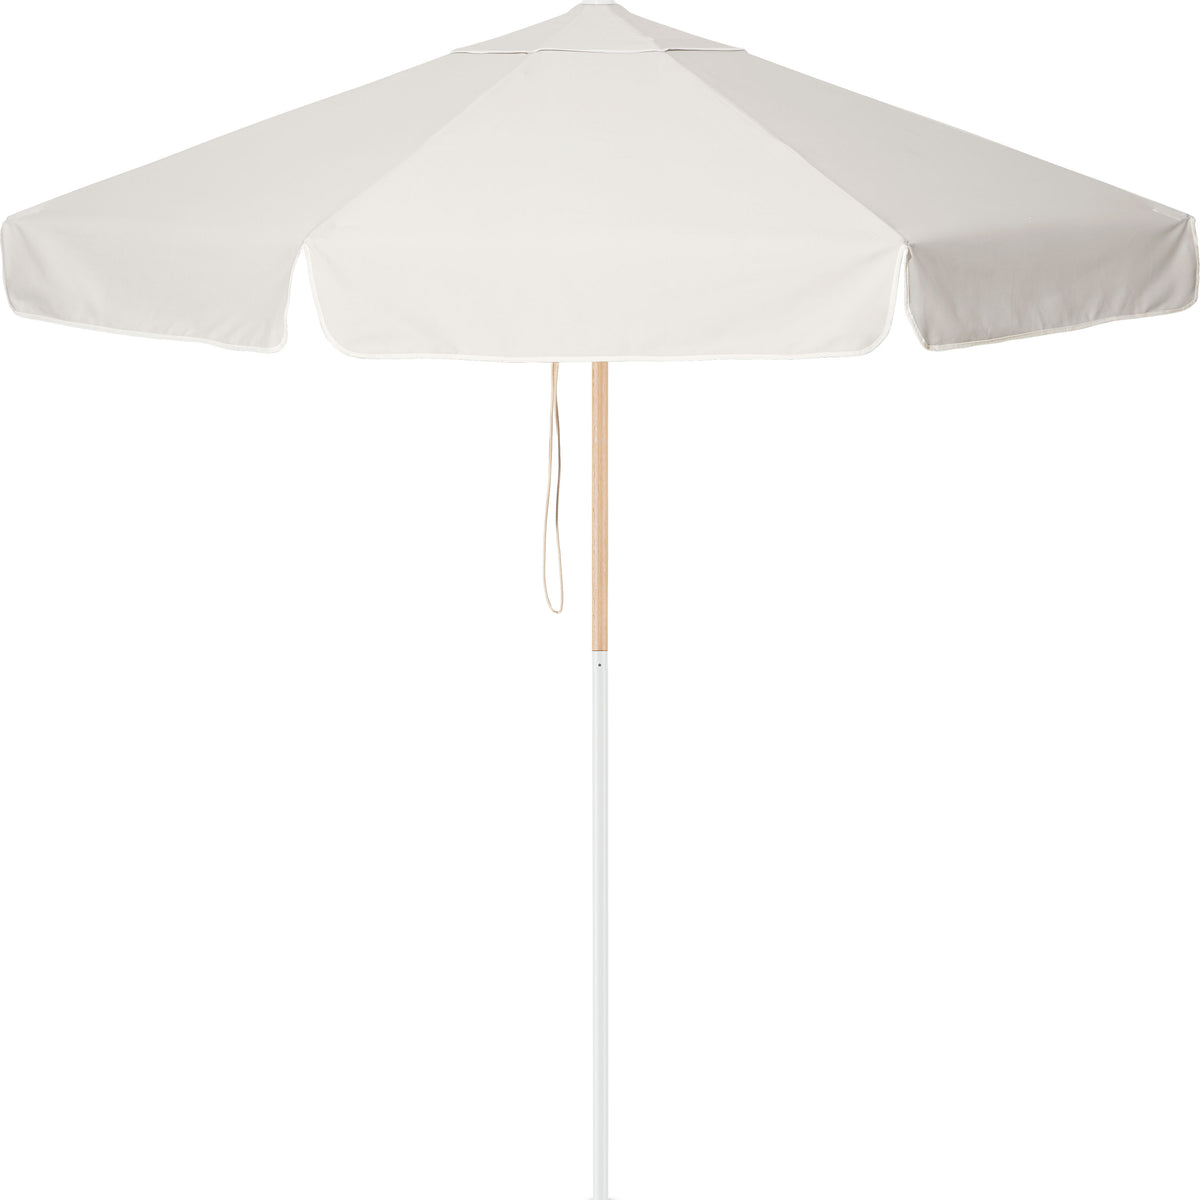 Dunes Market Umbrella